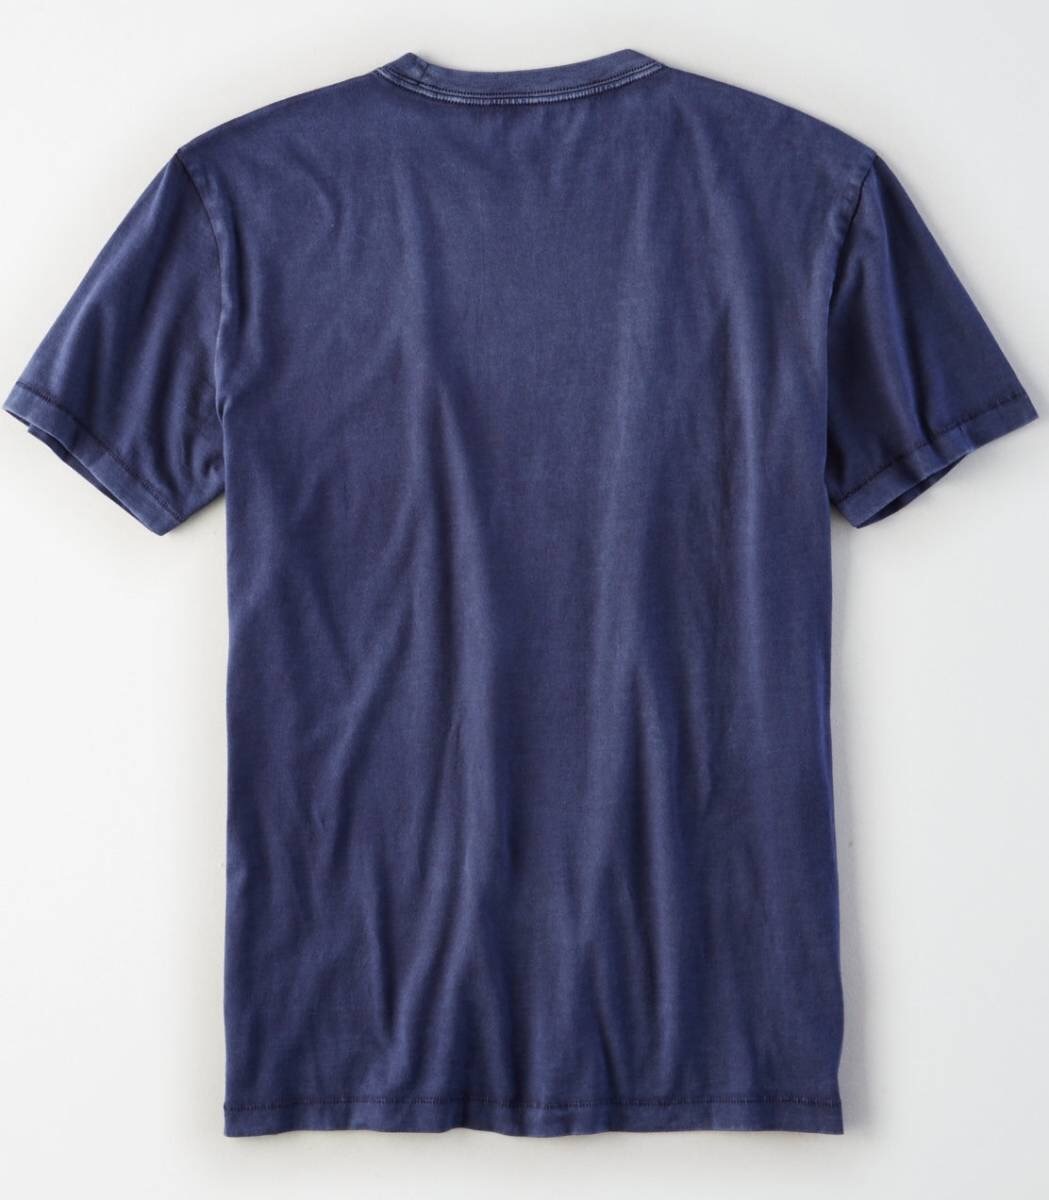 セール! 正規品 本物 新品 アメリカンイーグル 超クール! ワイルド ビンテージ加工 Tシャツ AMERICAN EAGLE 最強カラー ネイビー系 XS ( S_画像2